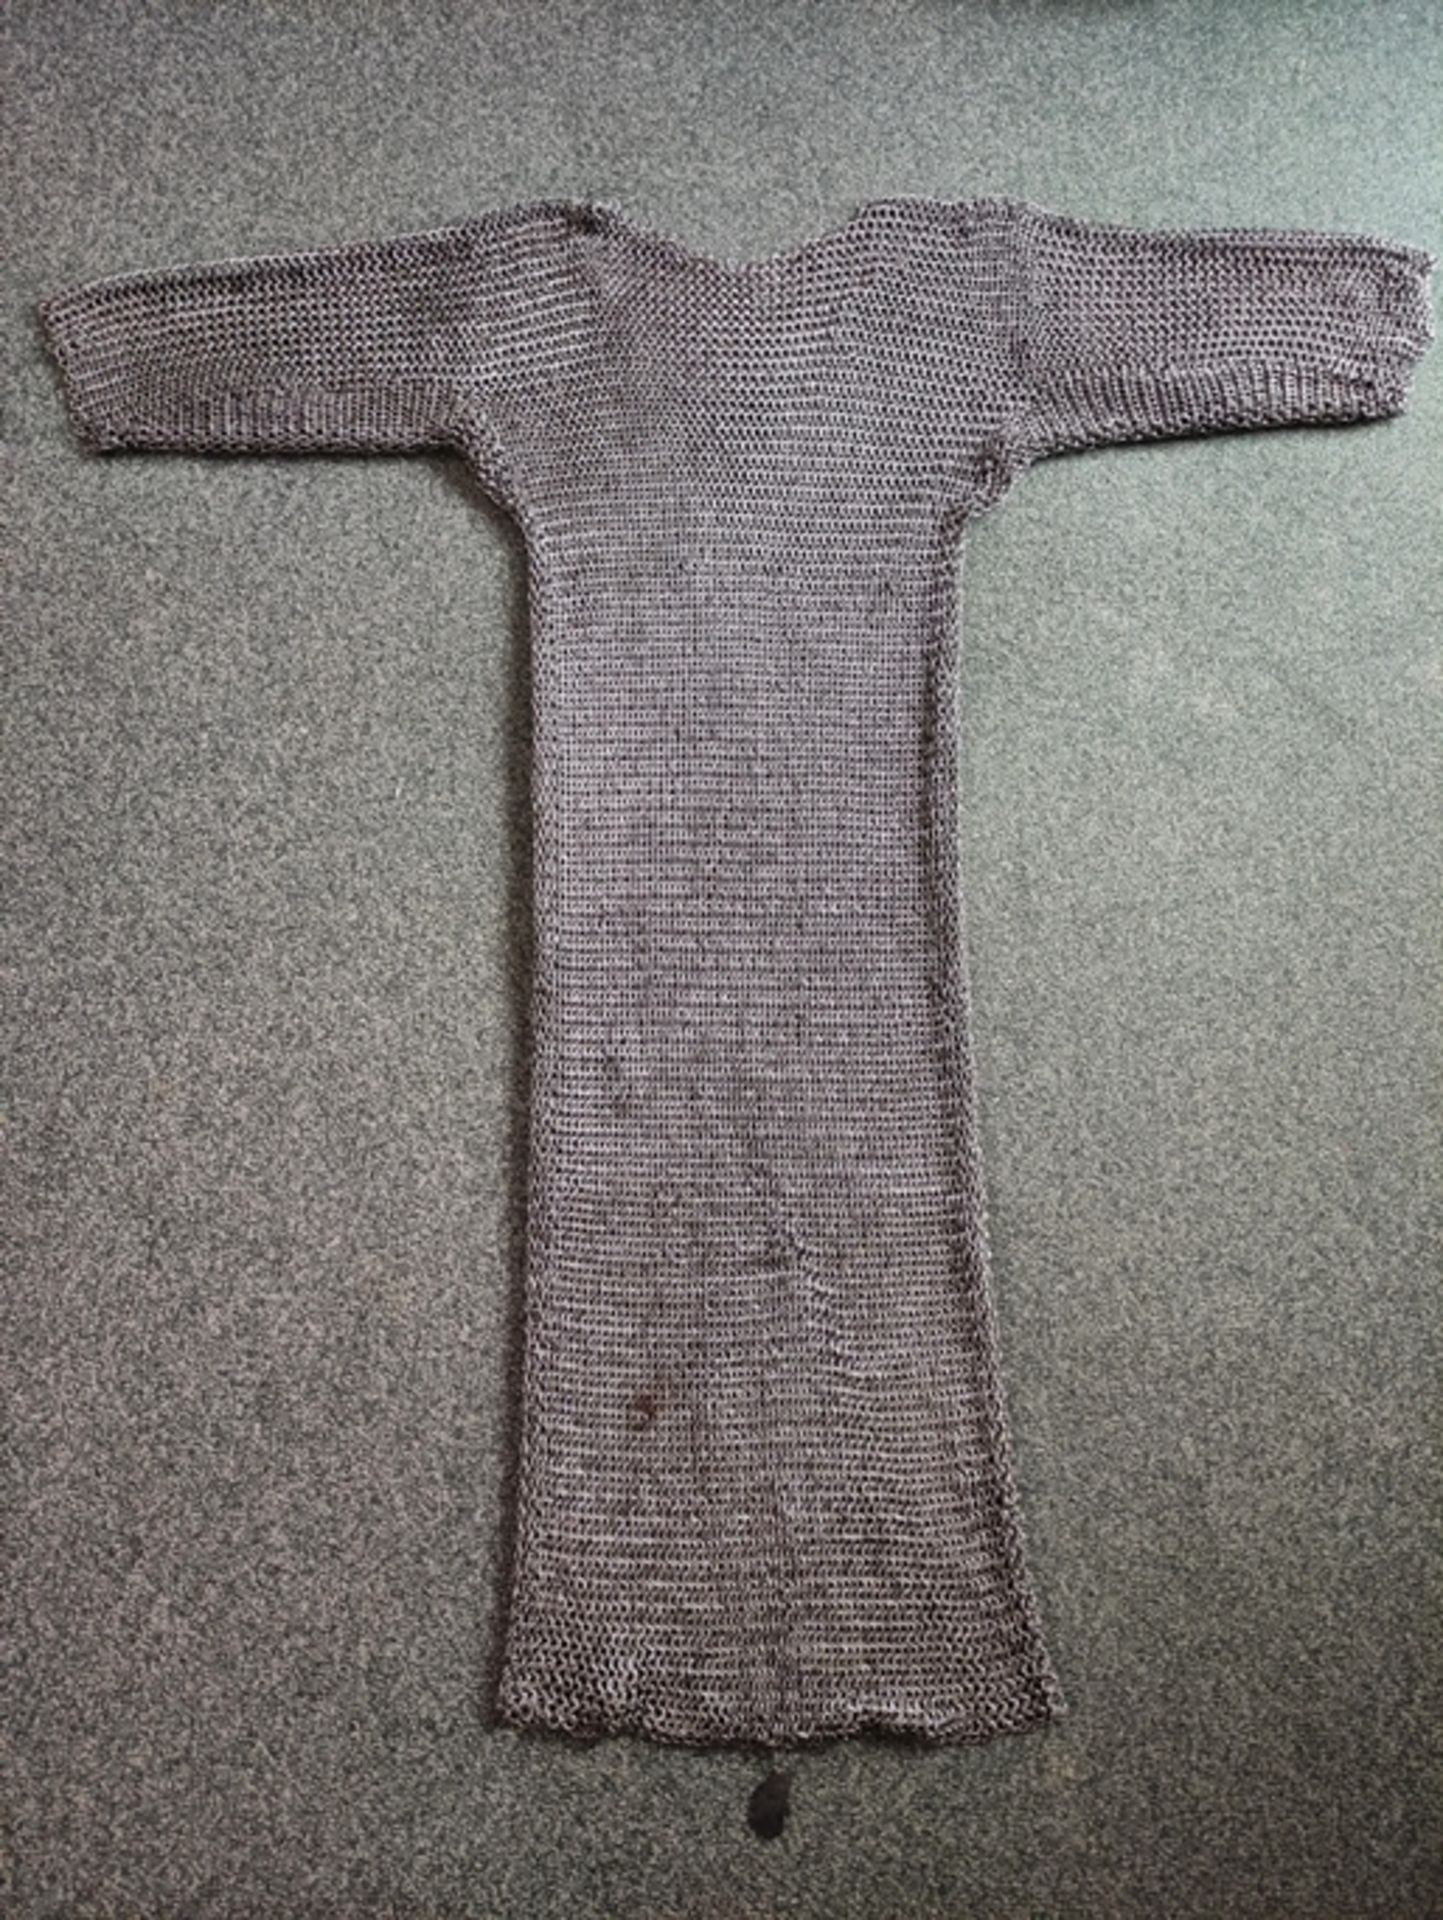 Kettenhemd, über hüftlanges Hemd mit halblangen Ärmeln aus Ringen (D 1,2 cm), Kragen mit Hakenversc